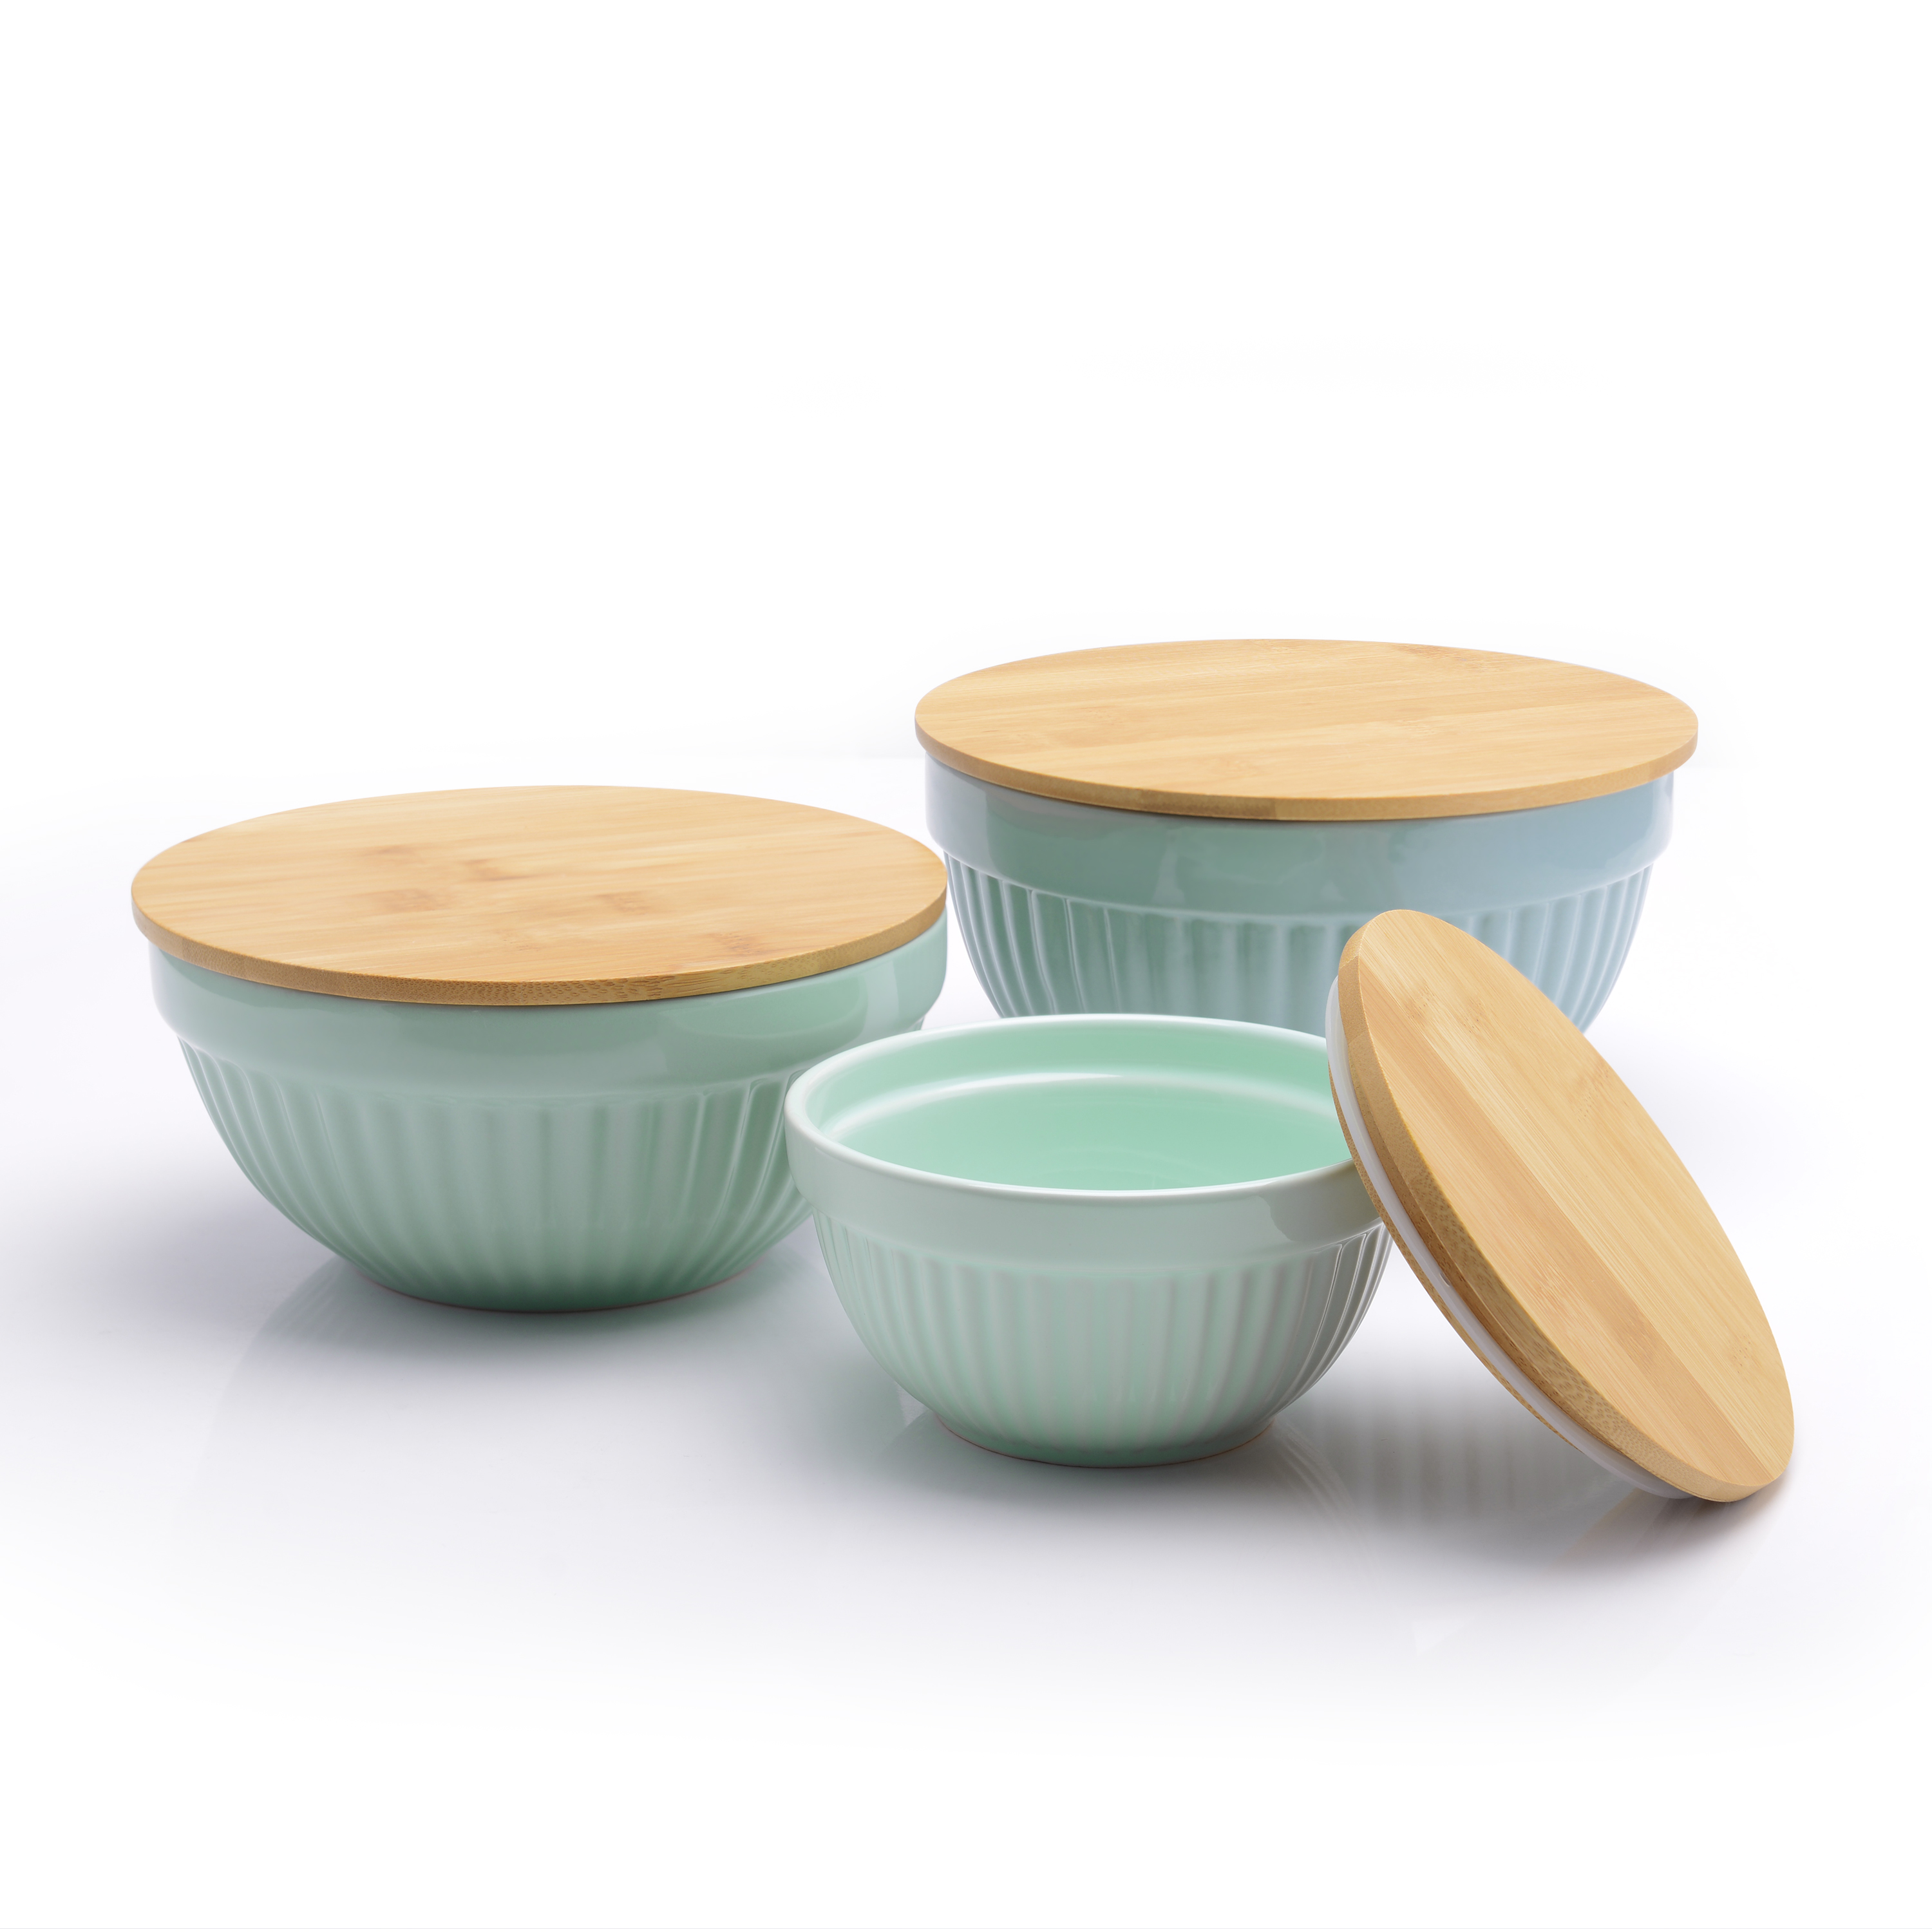 Better Homes & Gardens 3 Piece Ceramic Mixing Bowl Set, Aqua - image 1 of 8